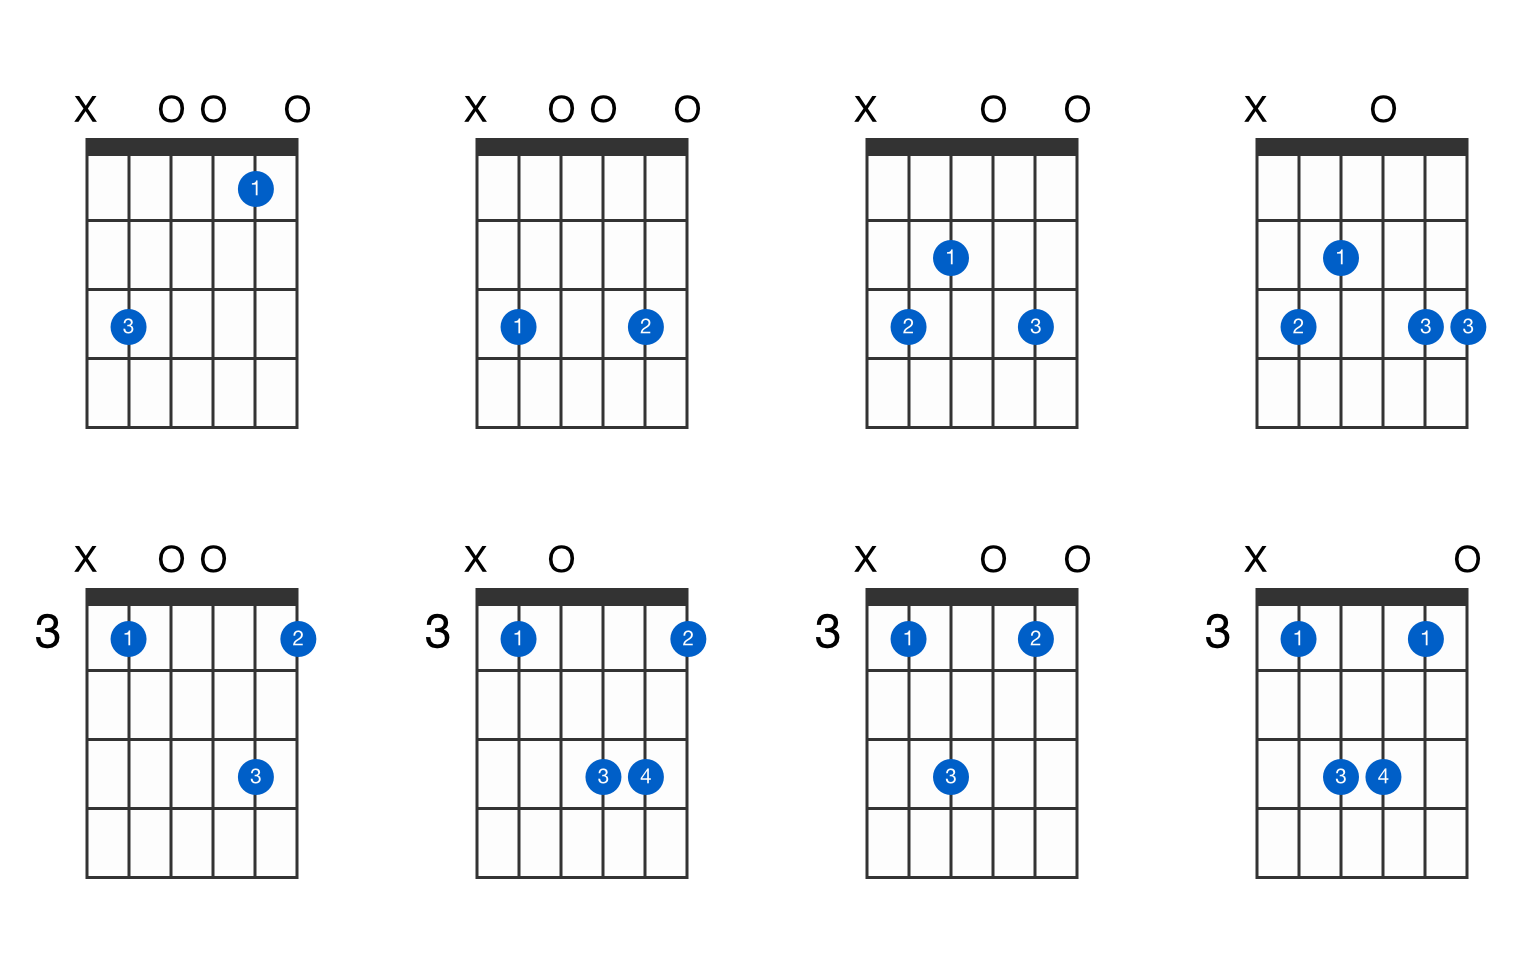 g add 9 guitar chord